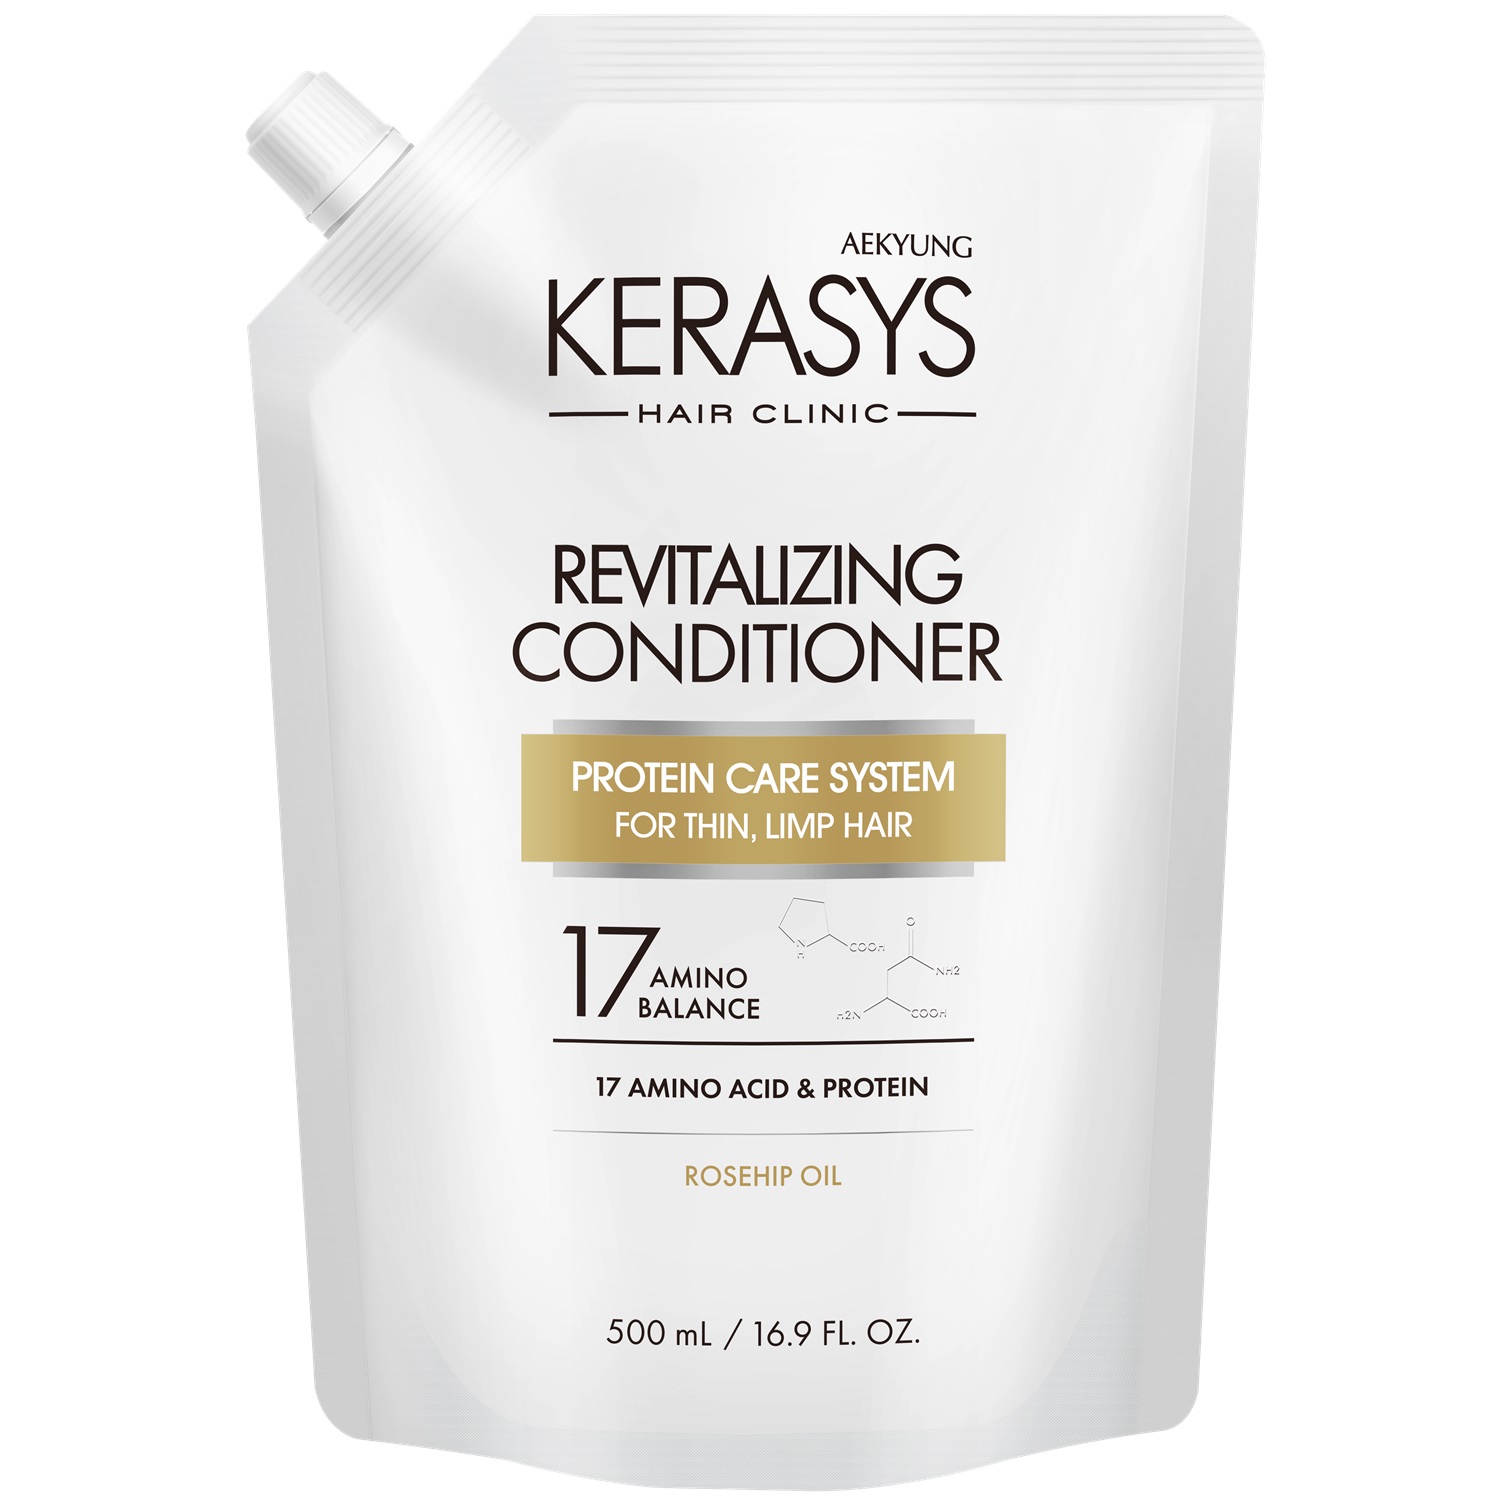 Kerasys Кондиционер оздоравливающий для волос, запасной блок, 500 мл (Kerasys, Hair Clinic) kerasys кондиционер оздоравливающий для волос revitalizing 400 мл kerasys hair clinic